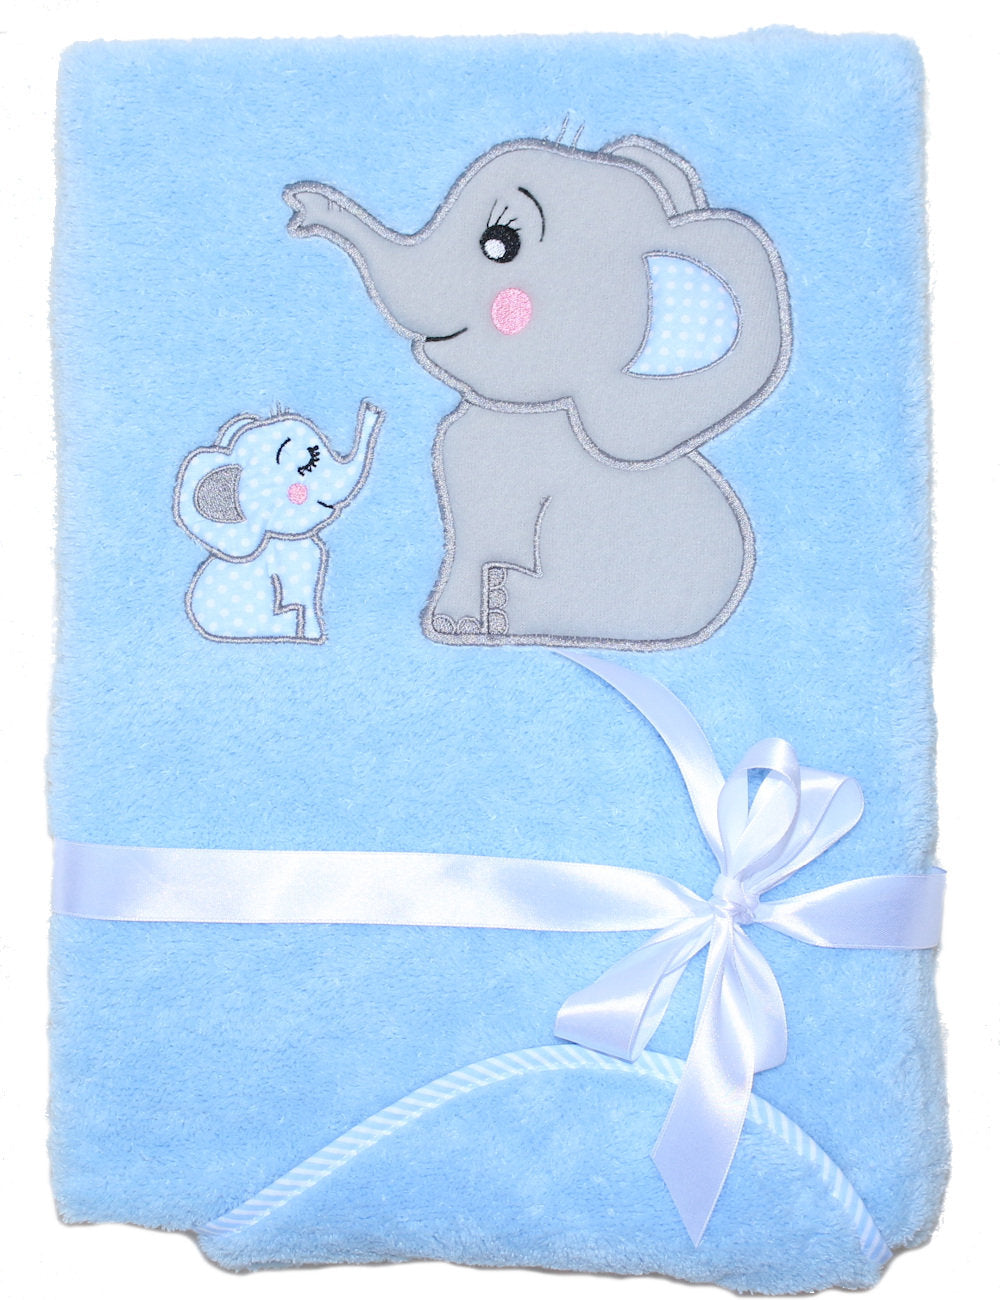 Babydecke mit Namen bestickt -Elefanten Blau- Kuscheldecke